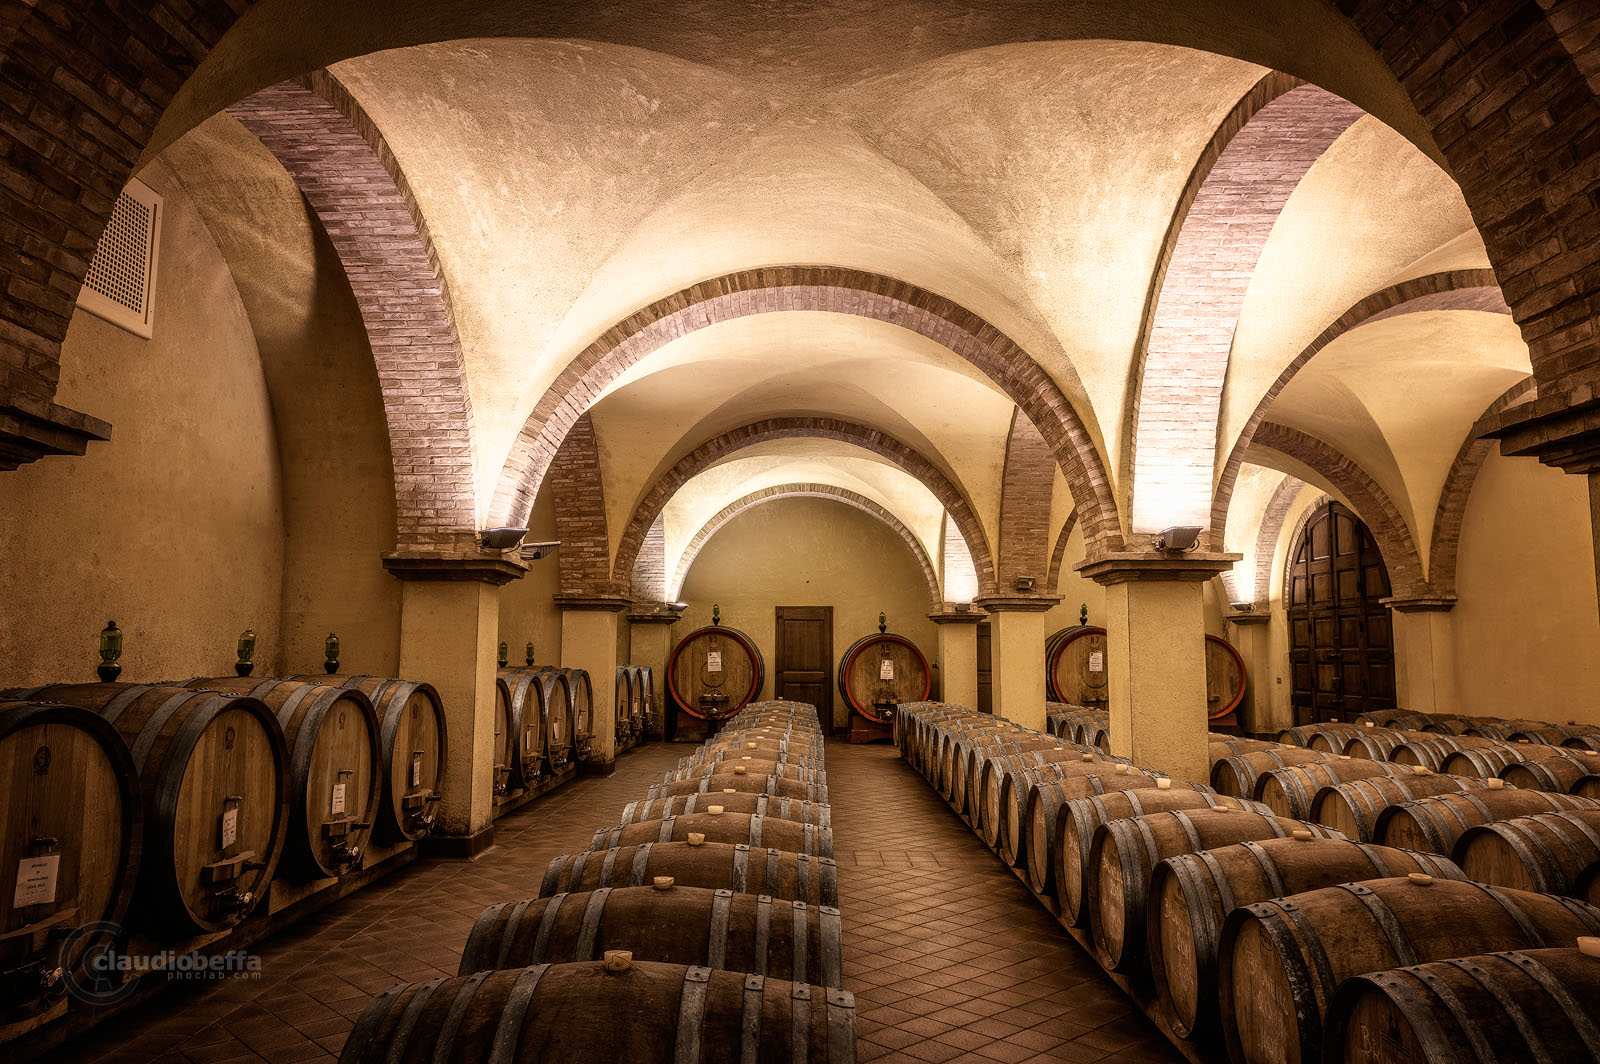 Cellar, Renaissance, Casks, Vaults, Rows, Ancient, Wine, Wine-making, Solaria, Tuscany, Toscana, Val d'Orcia, Italy, Italia